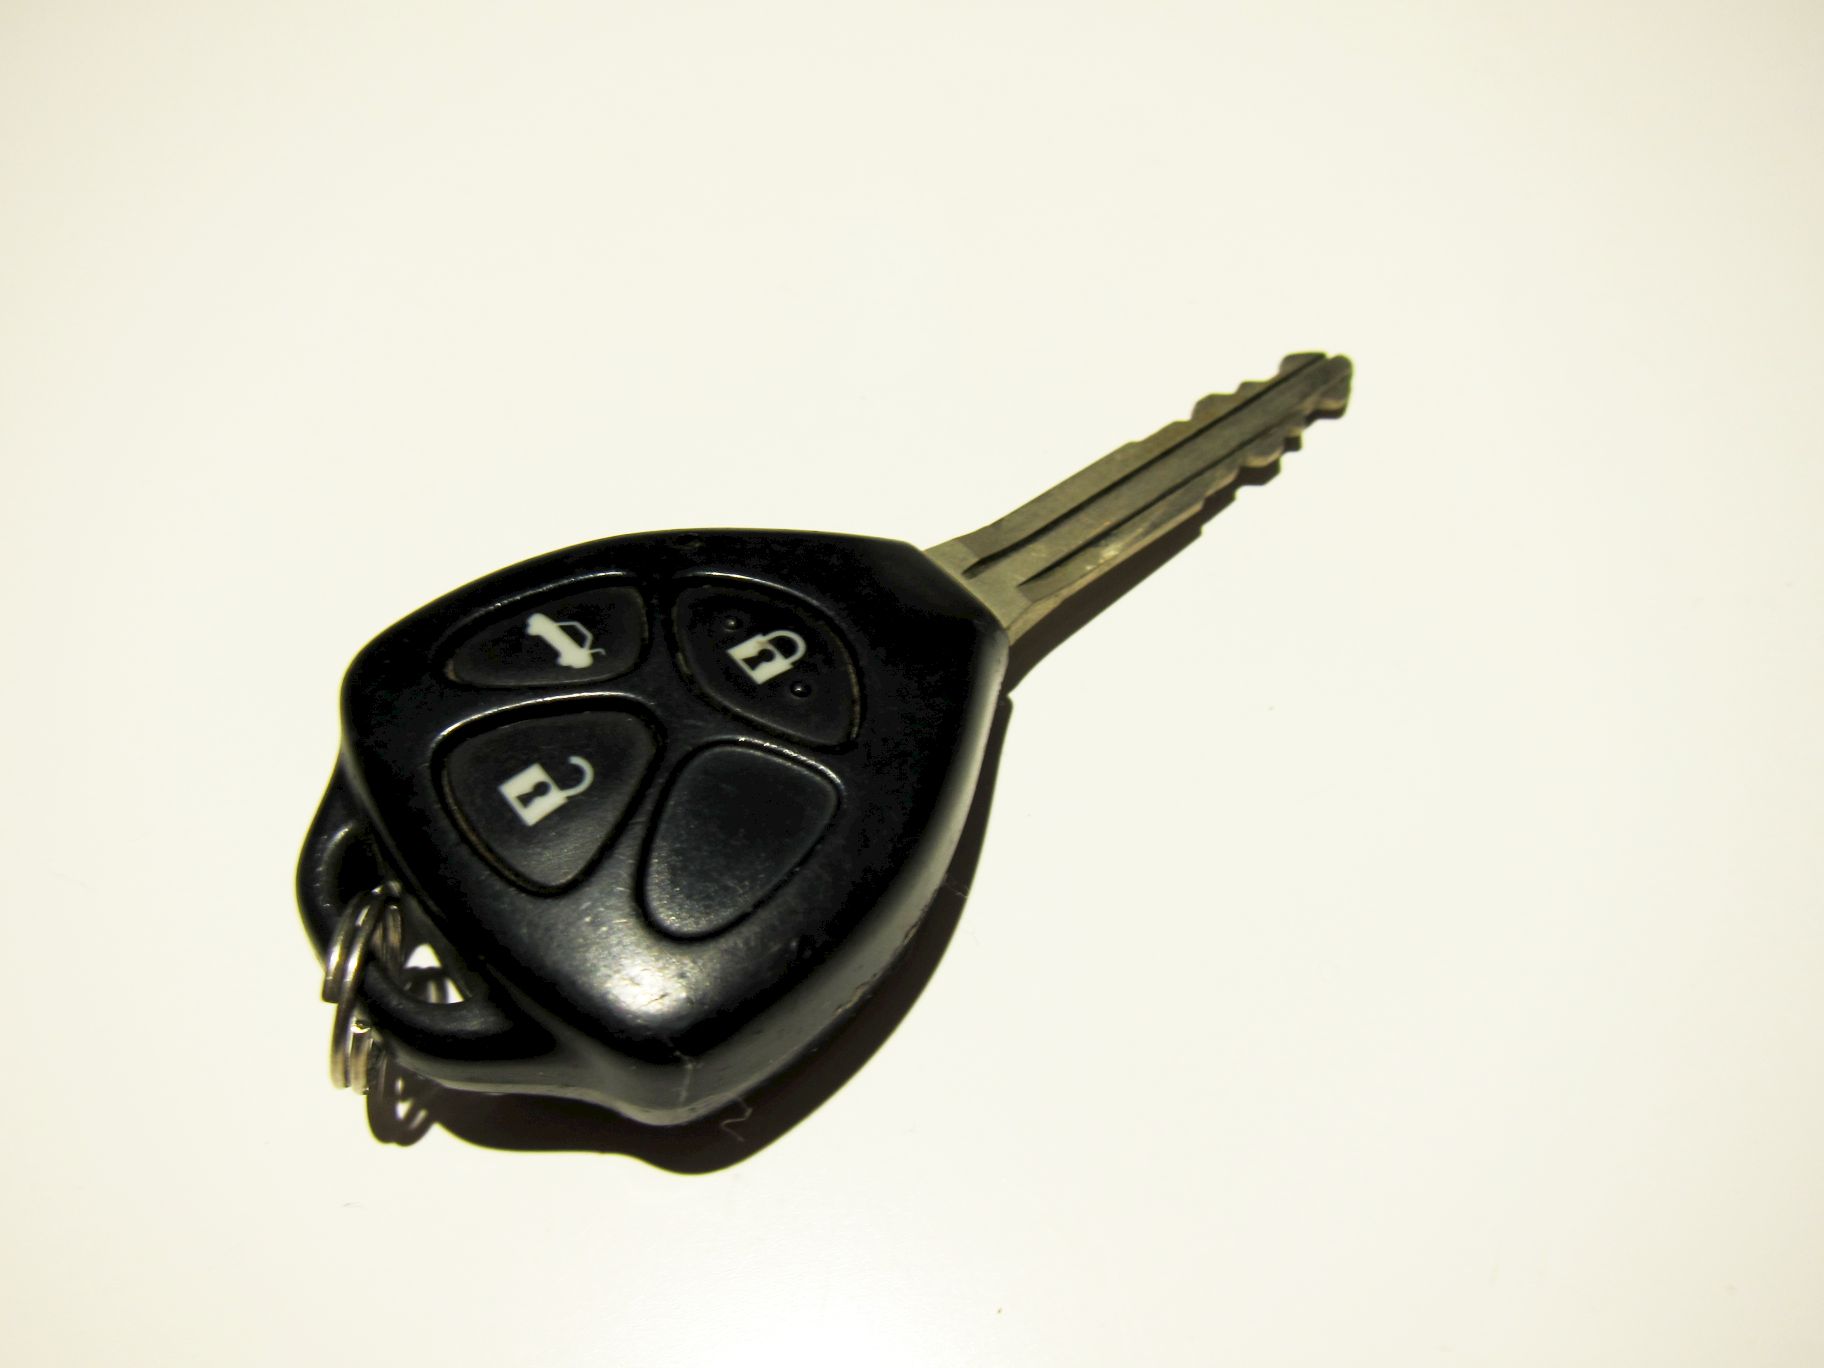 Ключ тойота рав. Ключ Denso 14fdc-01. Выкидной ключ Denso Toyota. Ключ от Тойота Краун с 130. Модель Тойота ключ.